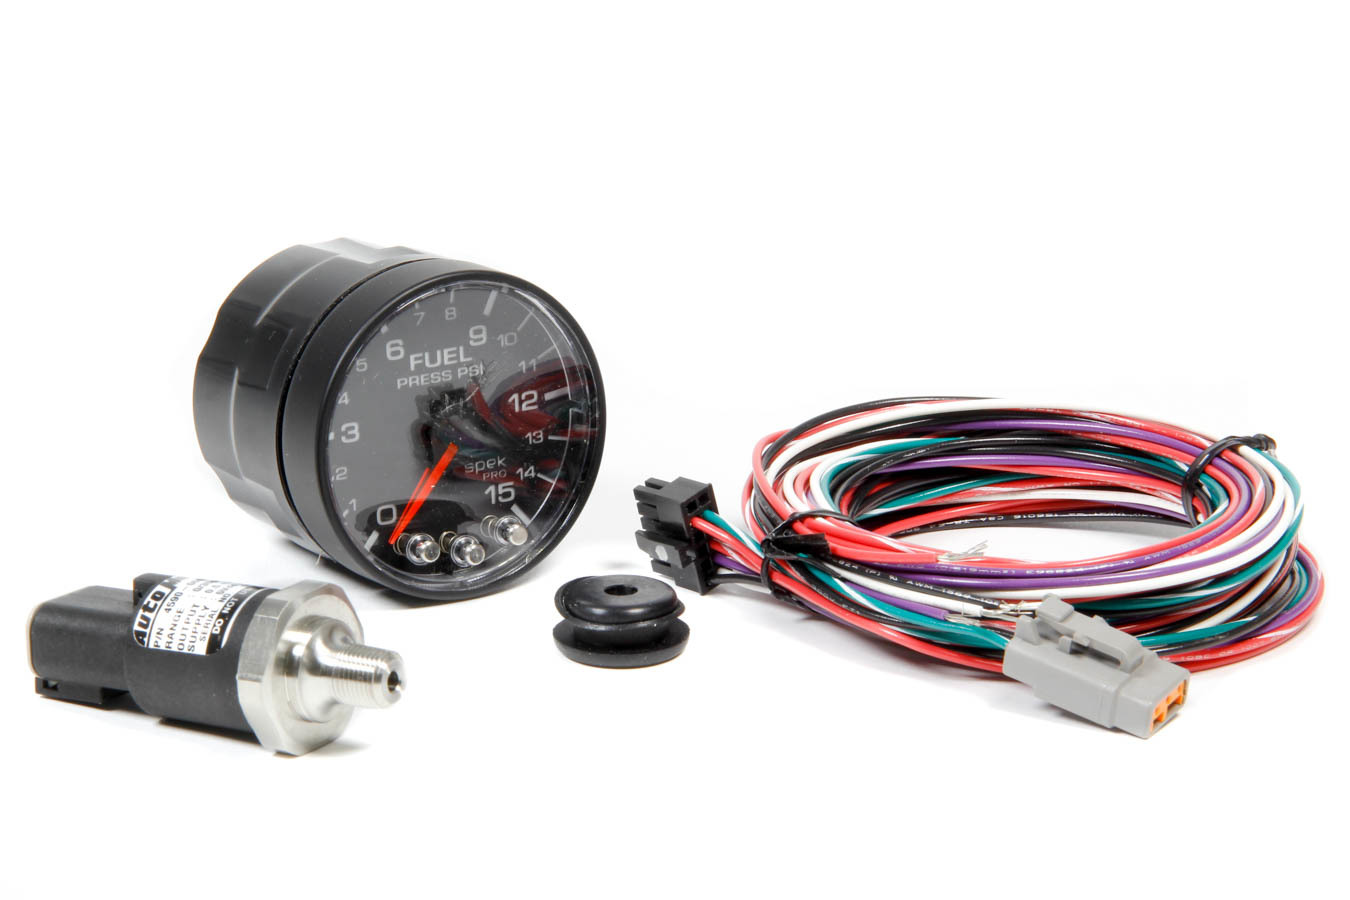 Auto Meter Fuel Pressure Gauge, Spek Pro, 0-15 psi, Electric, Analog, Full Sweep, 2-1/16" Diameter, Black Face, Each